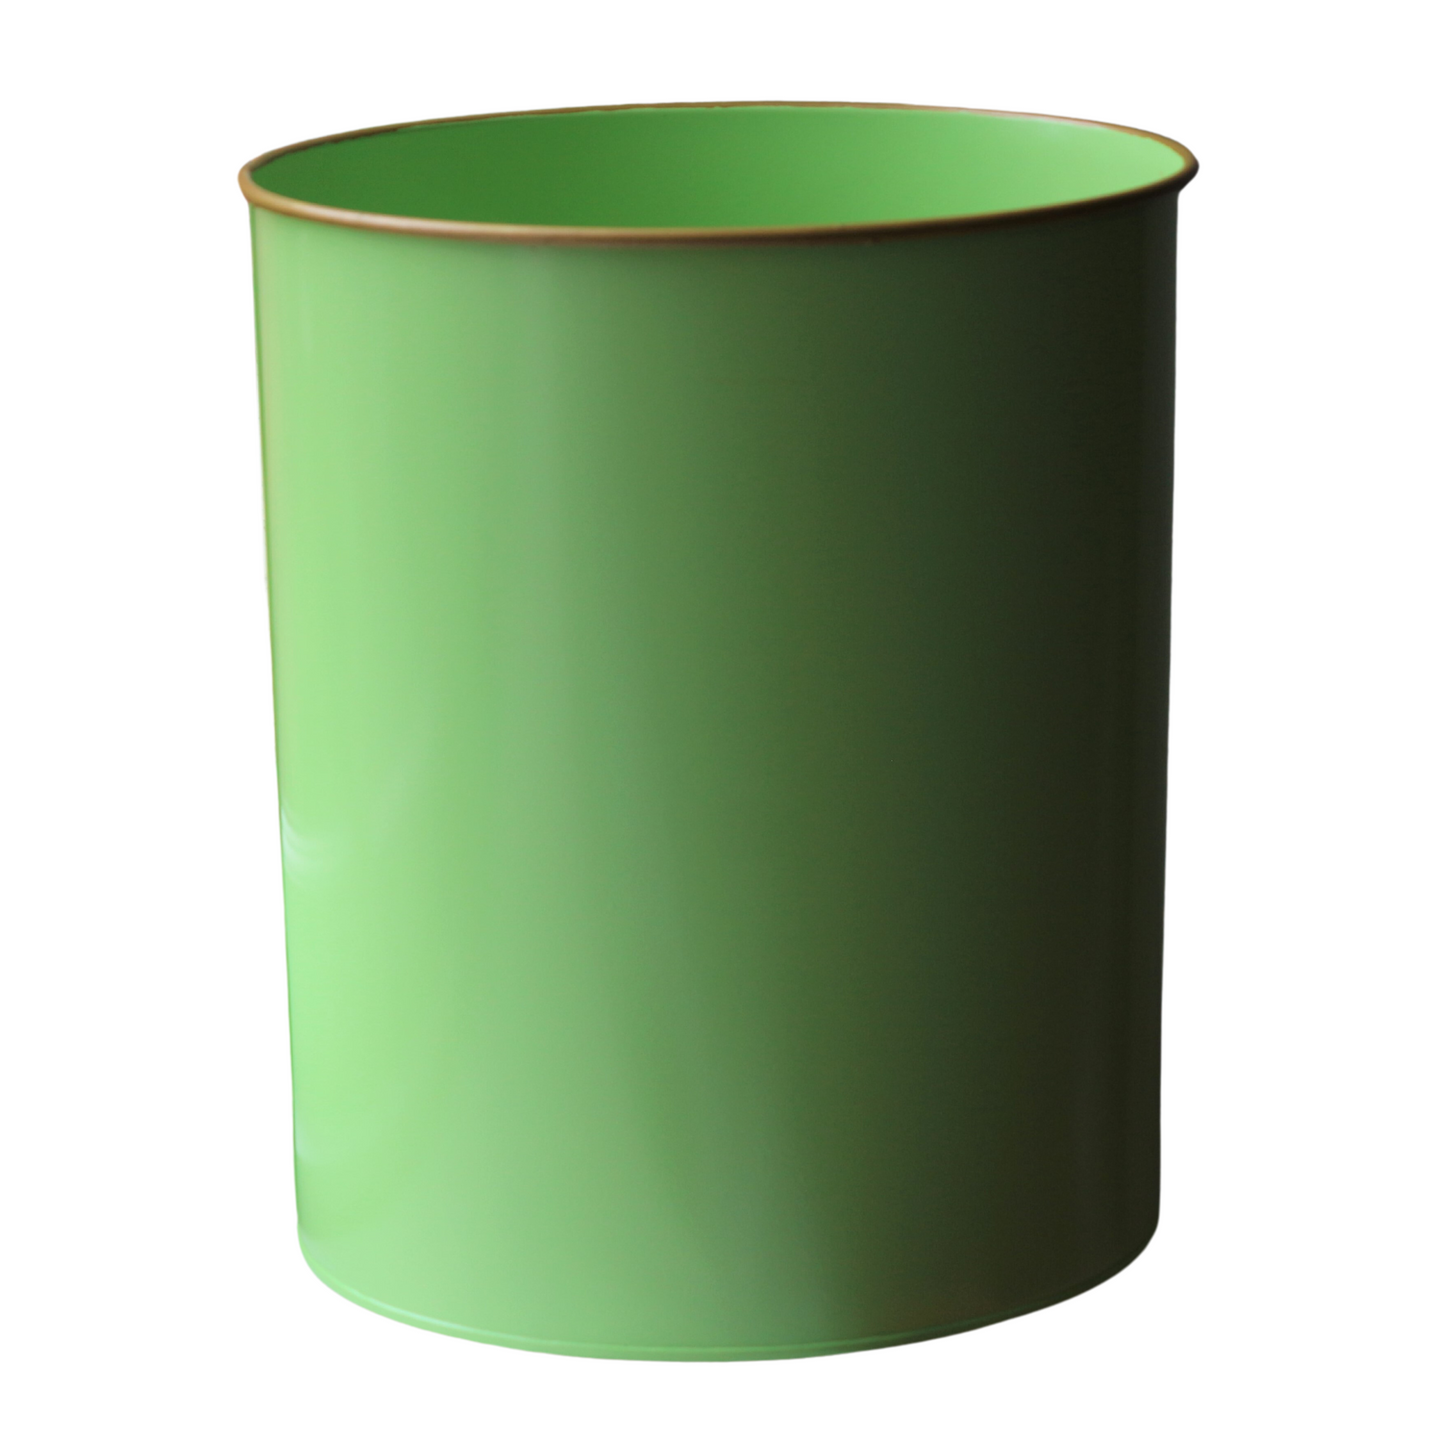 Oval Waste Paper Bin: Lime Green